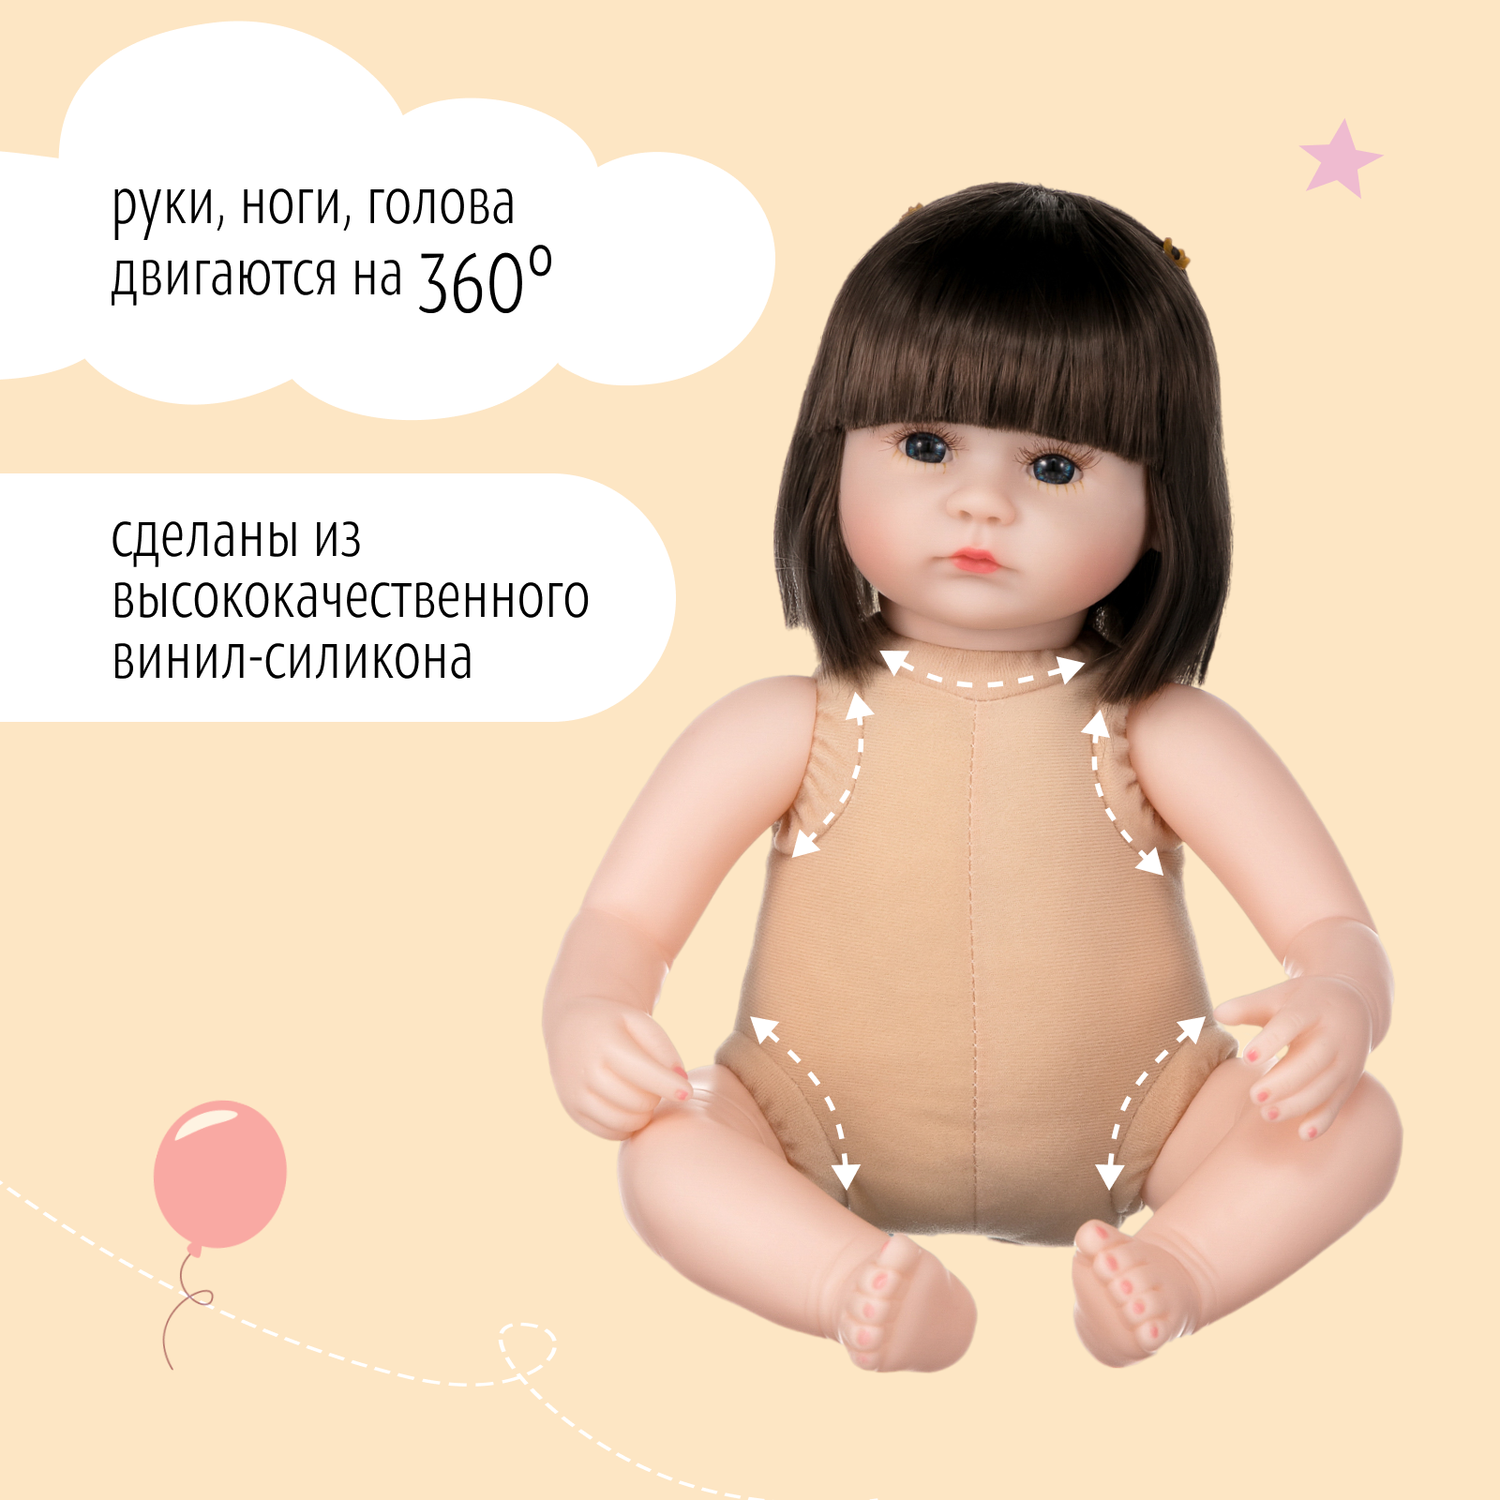 Кукла Реборн QA BABY Алина девочка большая пупс набор игрушки для девочки 42 см 45003 - фото 13